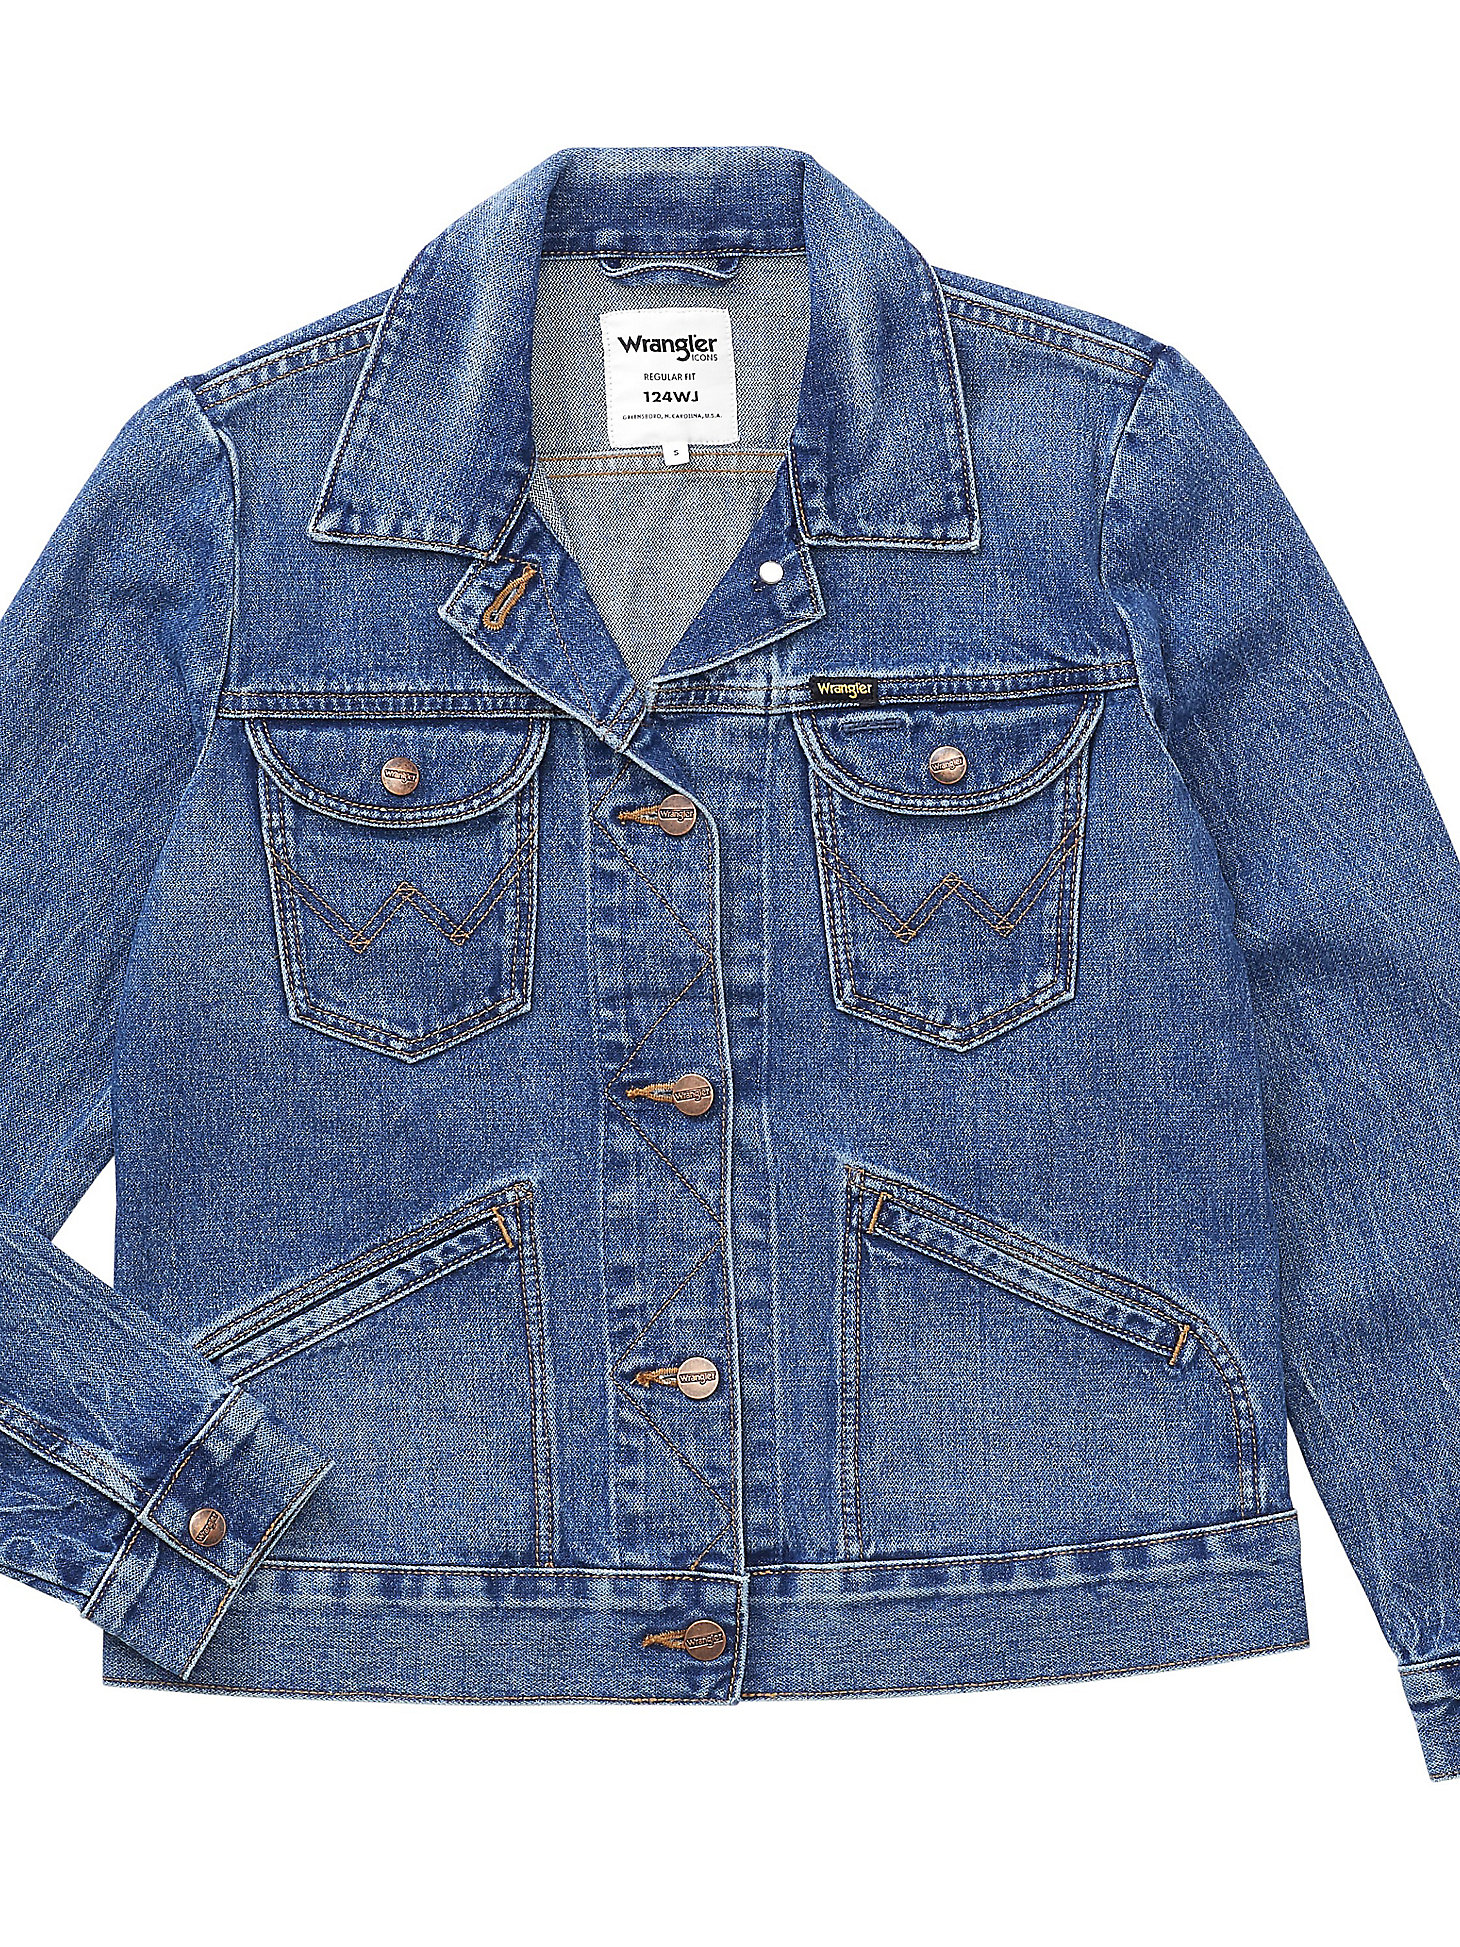 ICONS 124WJ Womens Denim Jacket:3 Year Wash:XS alternative view 7